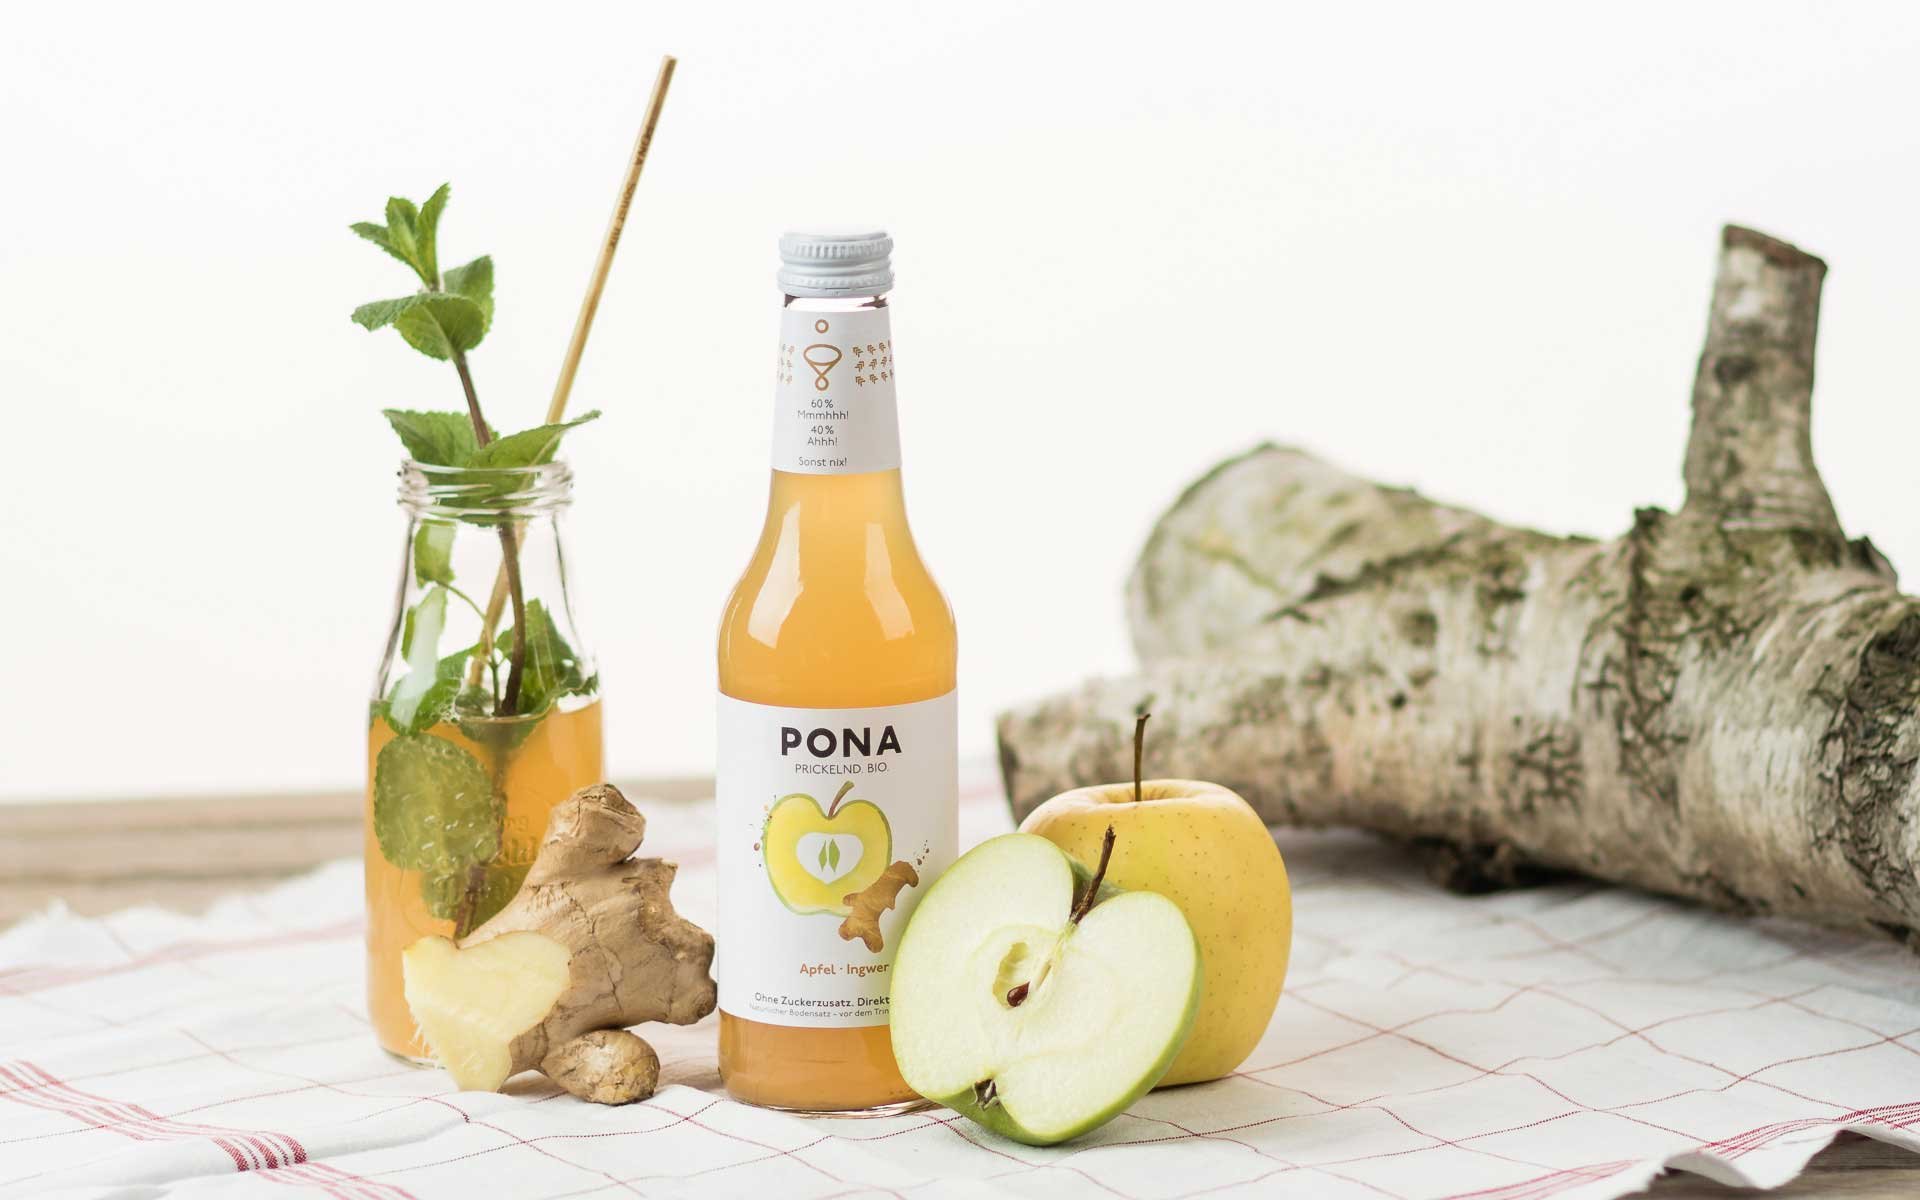 Pona Apfel-Ingwer: knackig firsche Demeter-Äpfel treffen würzig-aromatischen Ingwer